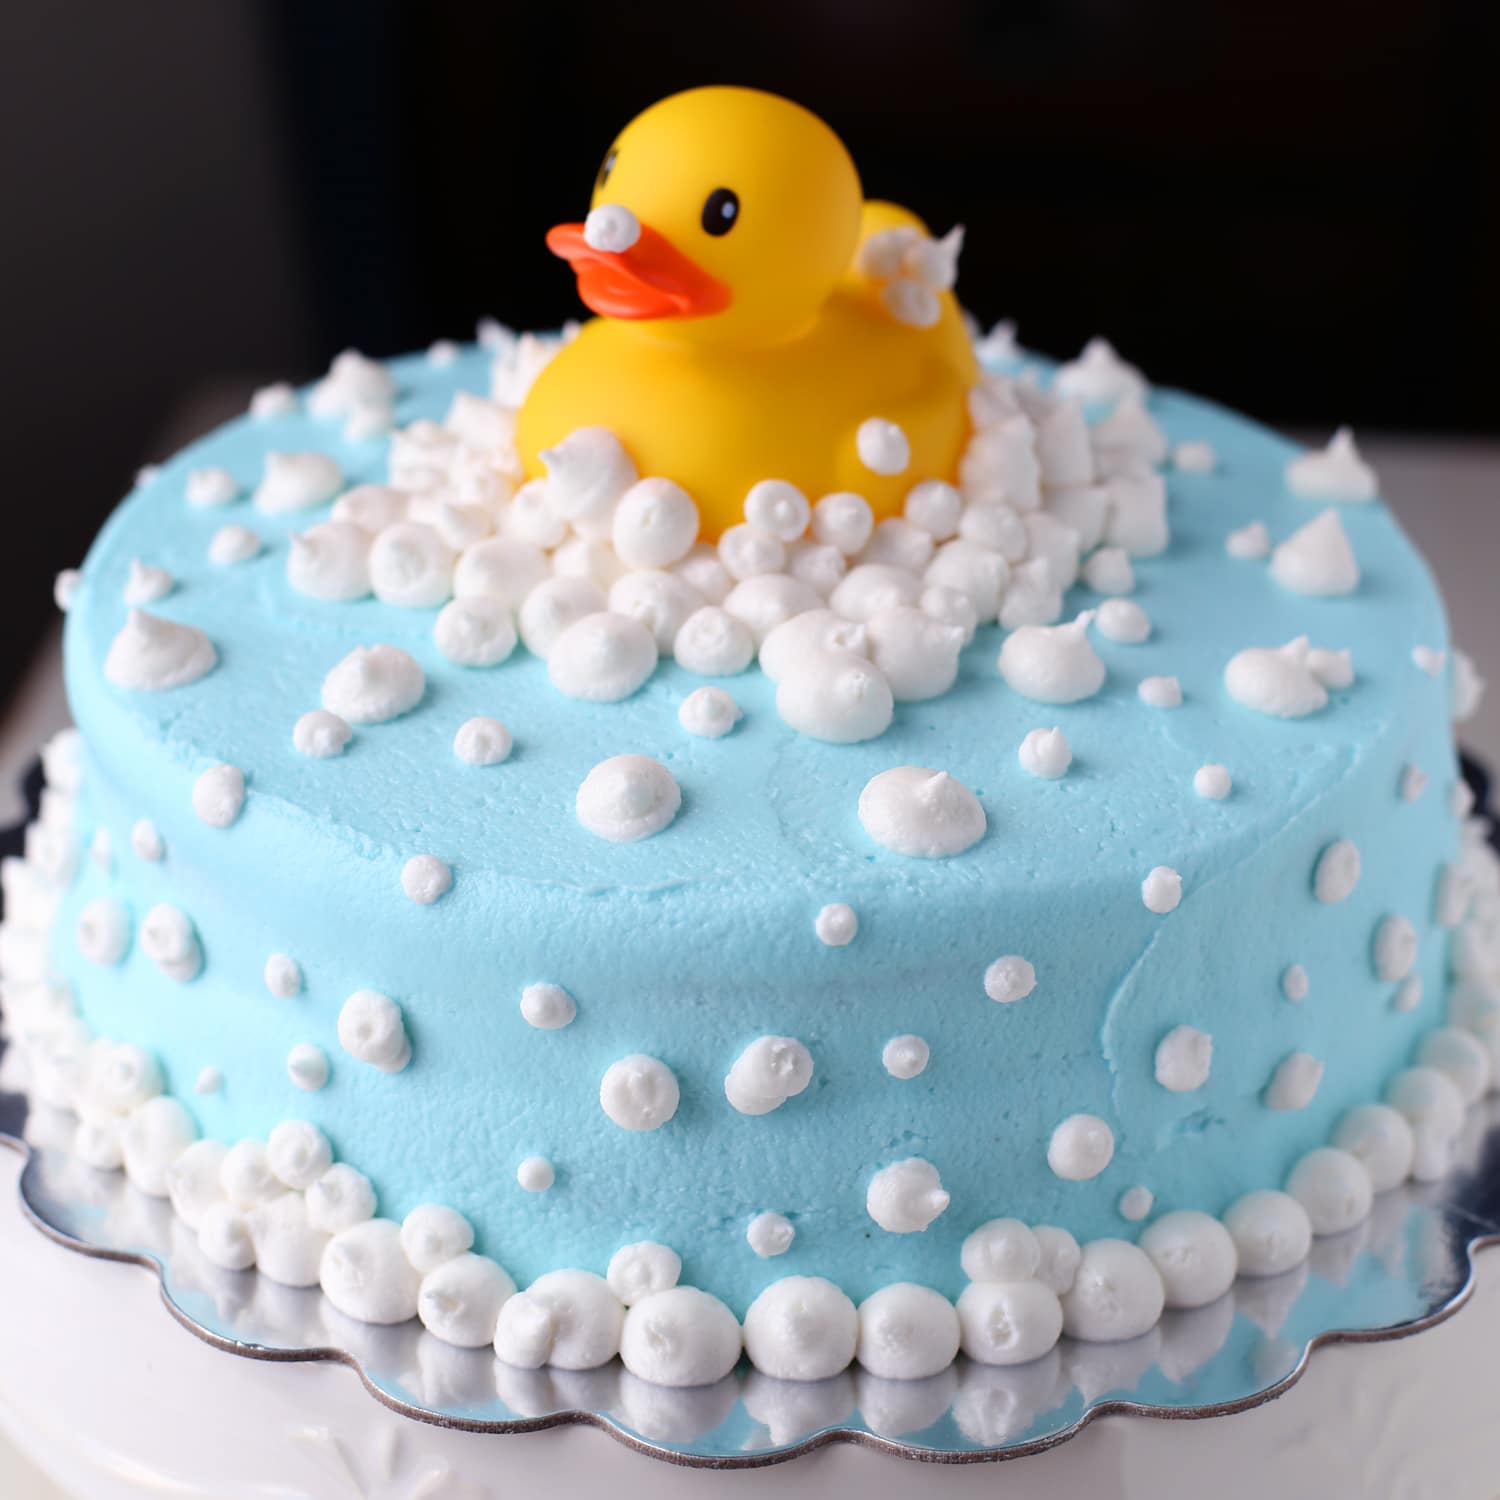 Baby Boss Cake | Baby birthday cakes, Baby boy birthday cake, Baby boy cakes